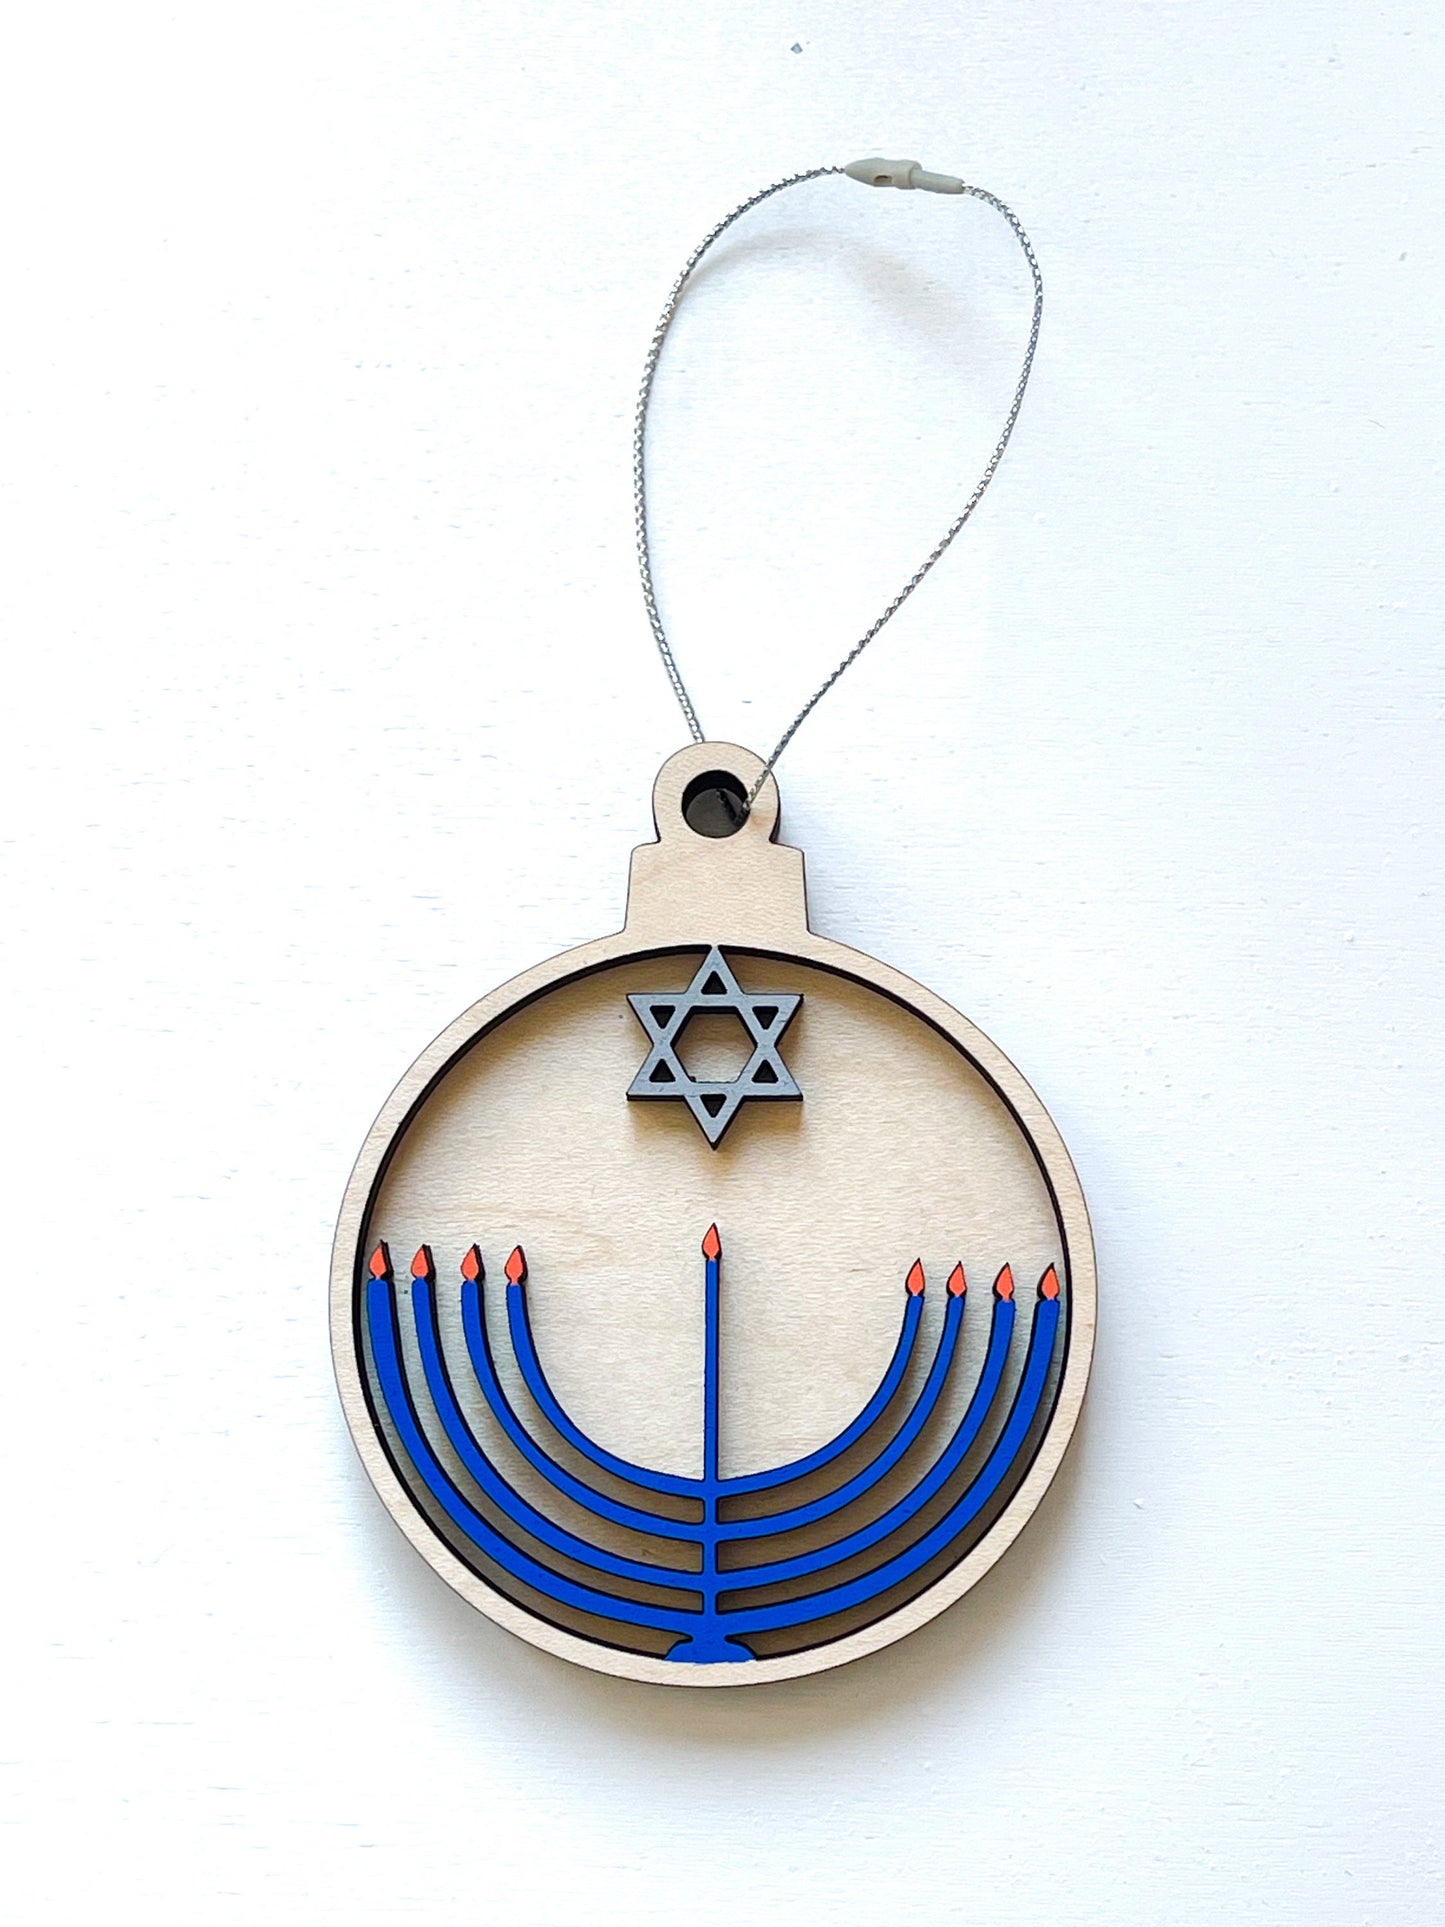 Hanukkah Menorah Ornament | Jewish Ornament | Chanukah Gift